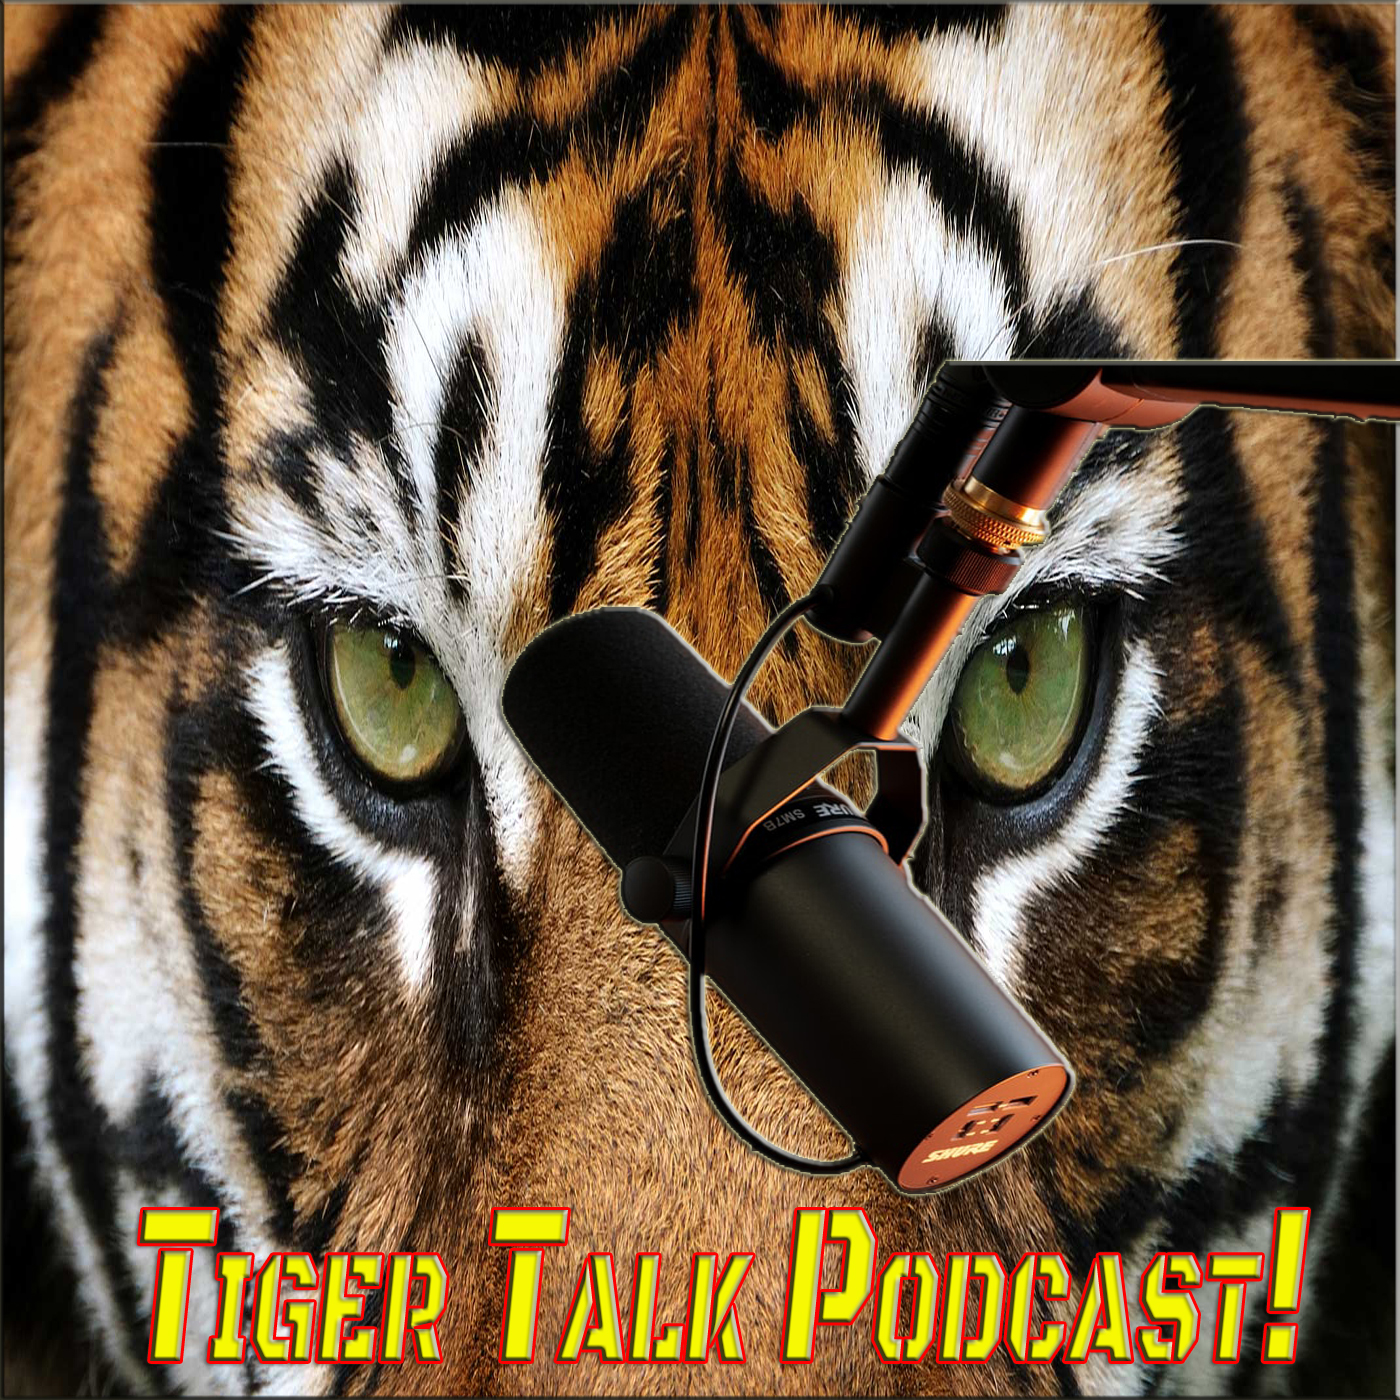 Tiger Talk Podcast!